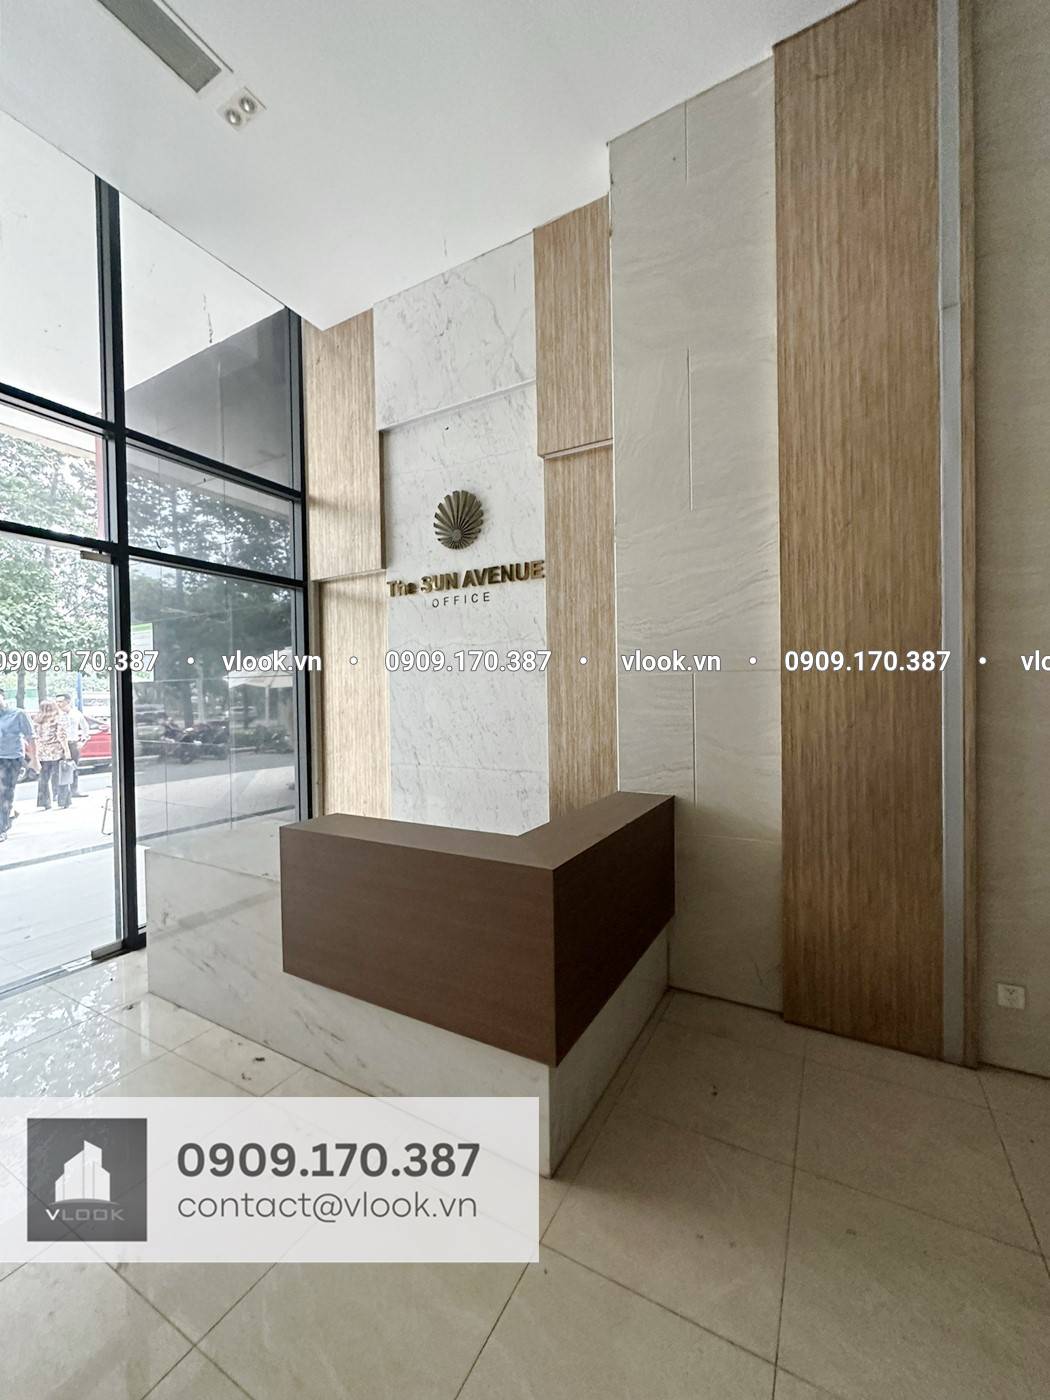 Cao ốc văn phòng cho thuê tòa nhà L'Mak 28 Mai Chí Thọ, Phường An Phú, Quận 2, TP Thủ Đức - vlook.vn - 0909 170 387